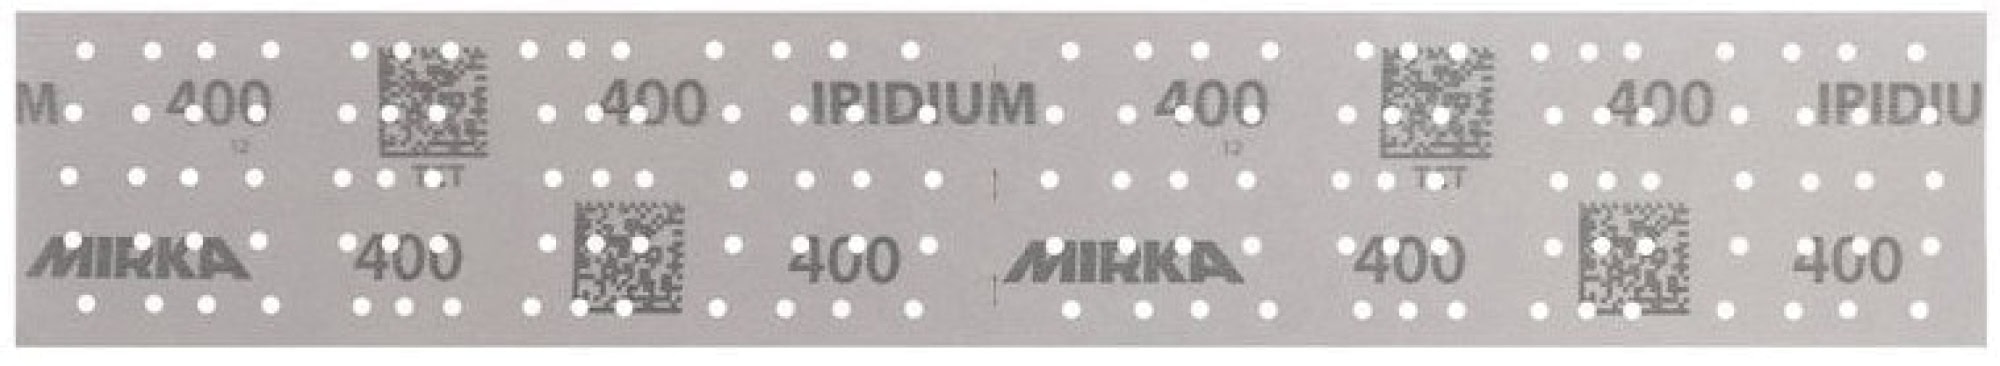 Mirka® Iridium® 246B205022, 70 mm x 400 mm, 2 mal in 70 x 198 mm Stücke perforiert, P220, Multilochung, Kletthaftend, Schleifstreifen mit Keramik- und Aluminiumkorn